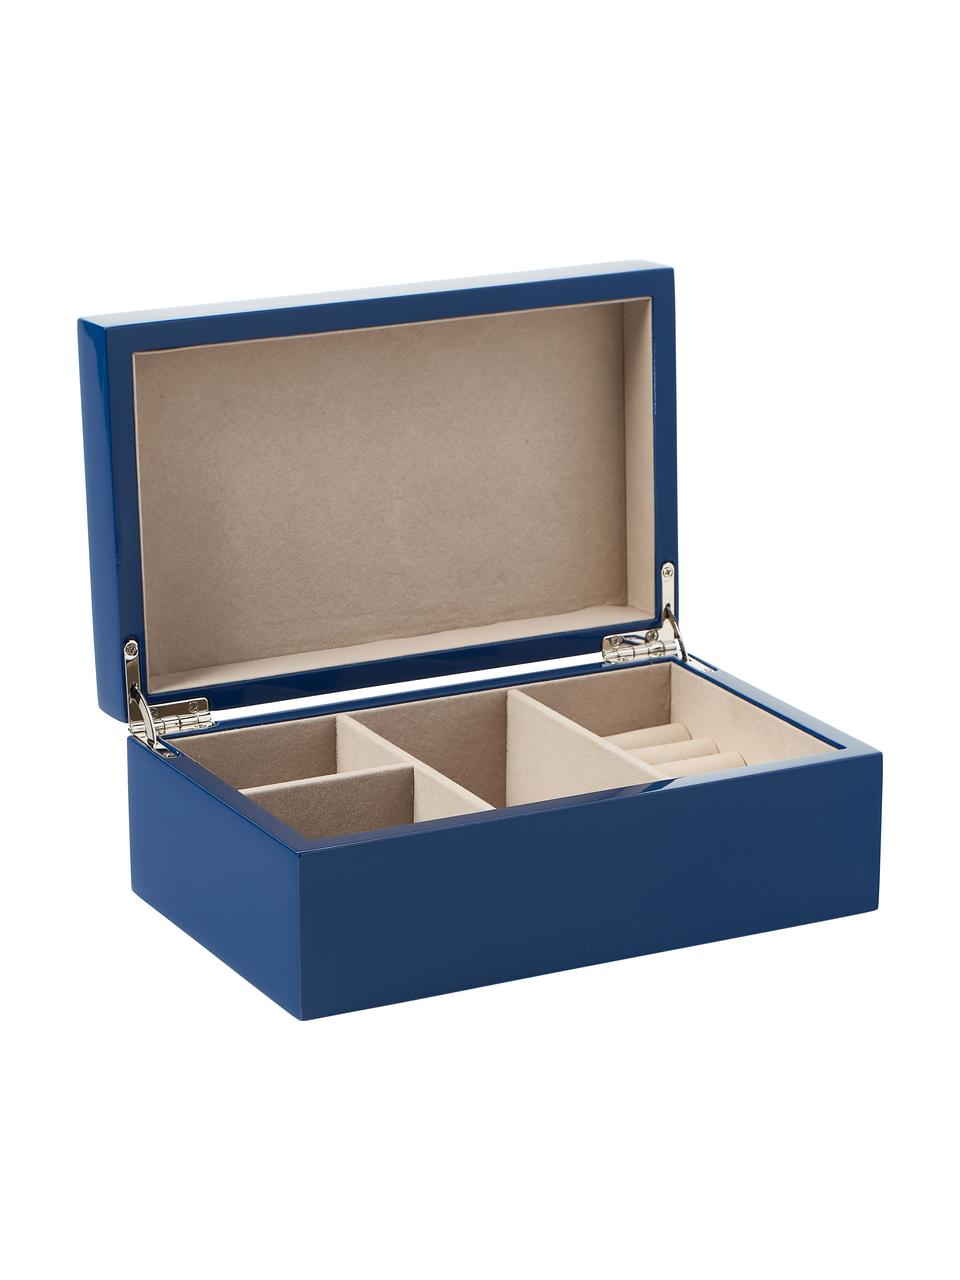 Boîte à bijoux Taylor, Bleu foncé, larg. 22 x haut. 8 cm